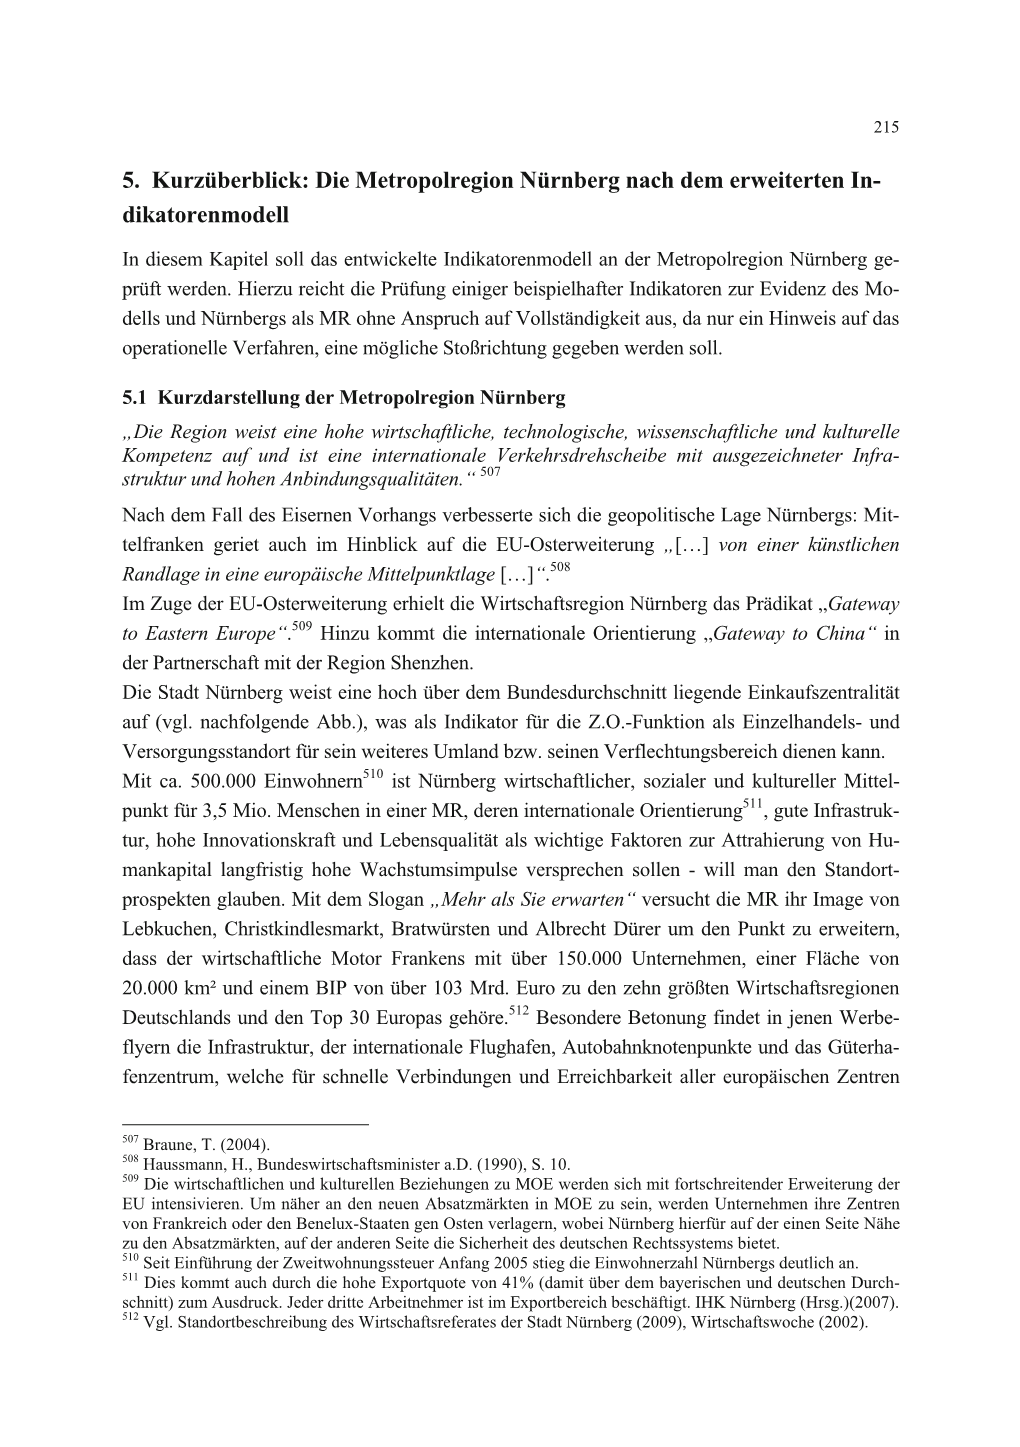 5. Kurzüberblick: Die Metropolregion Nürnberg Nach Dem Erweiterten In- Dikatorenmodell